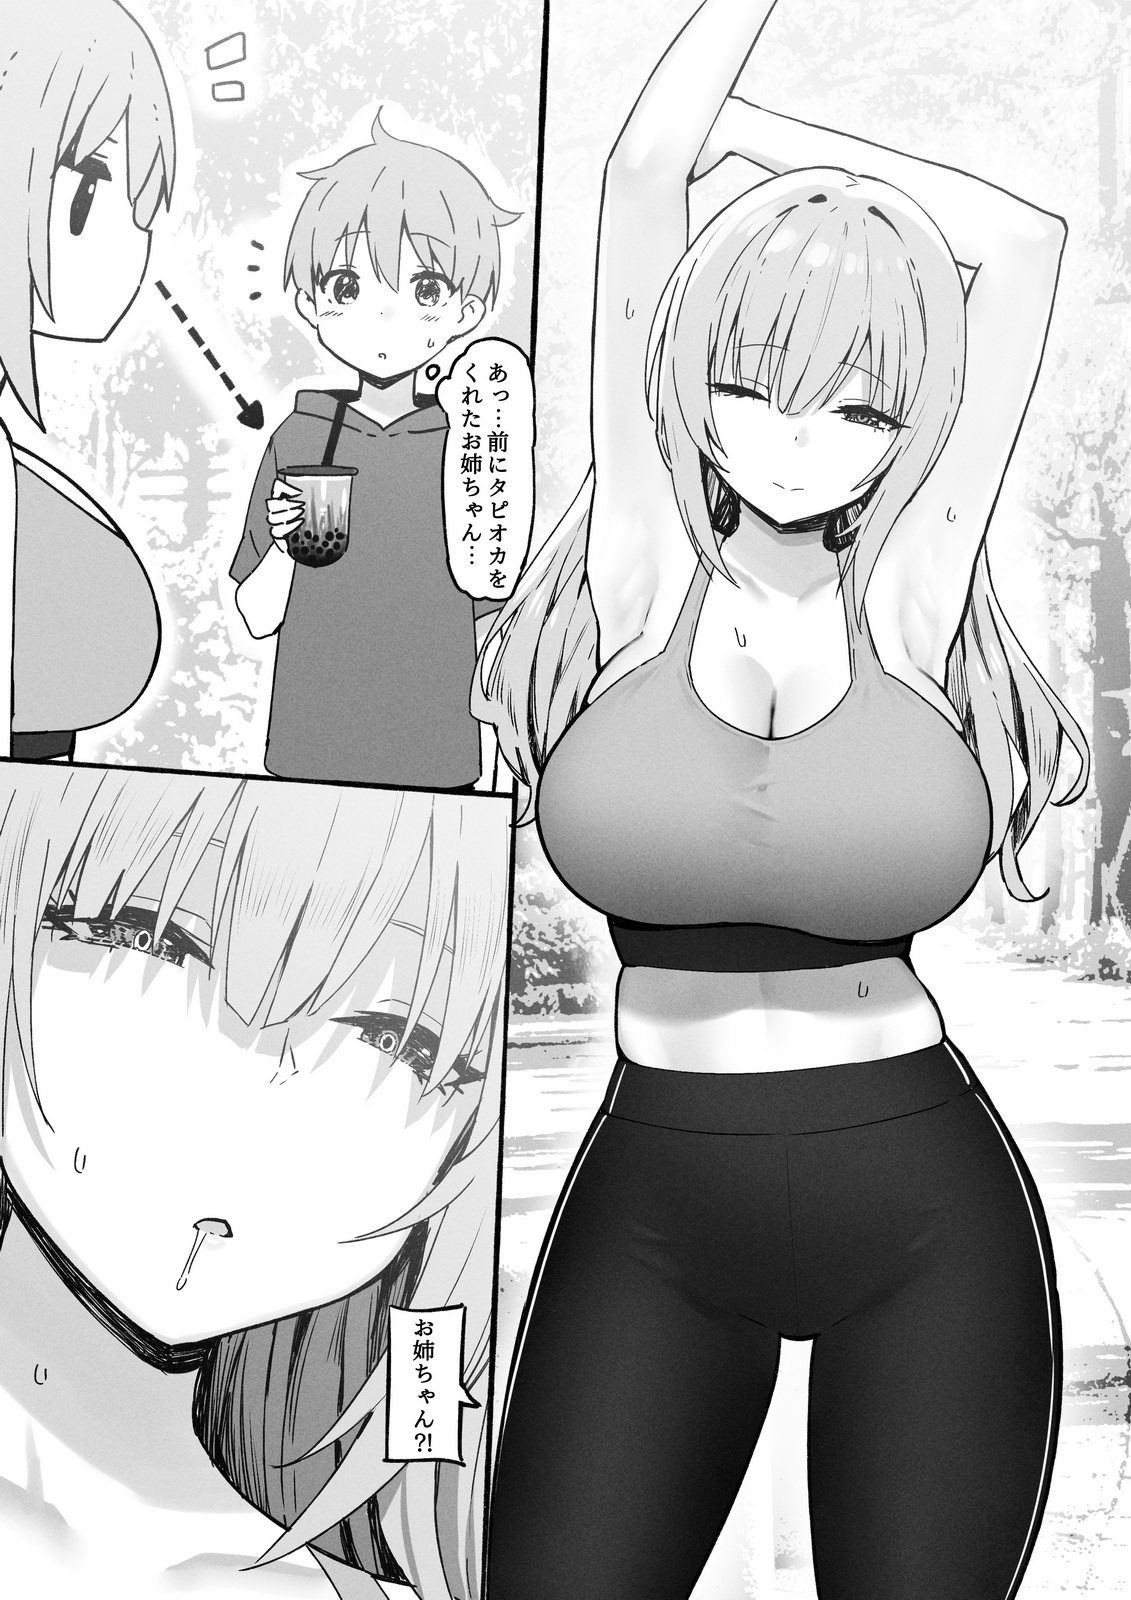 Kaori big boobs